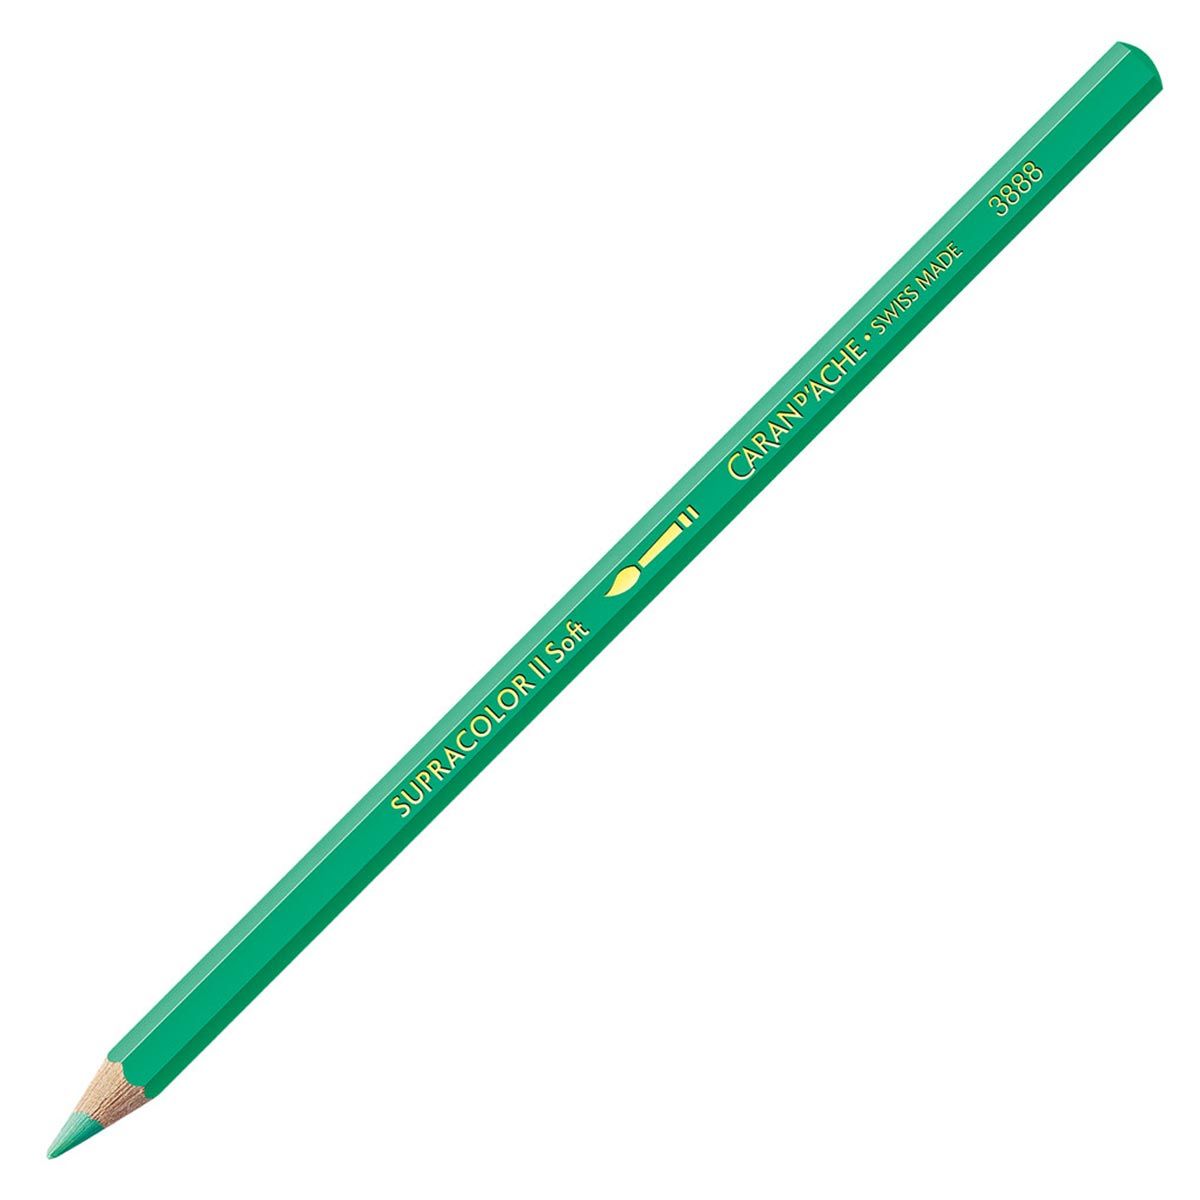 Caran d'Ache Supracolor ll Soft Aquarelle Pencil - Veronese Green 201